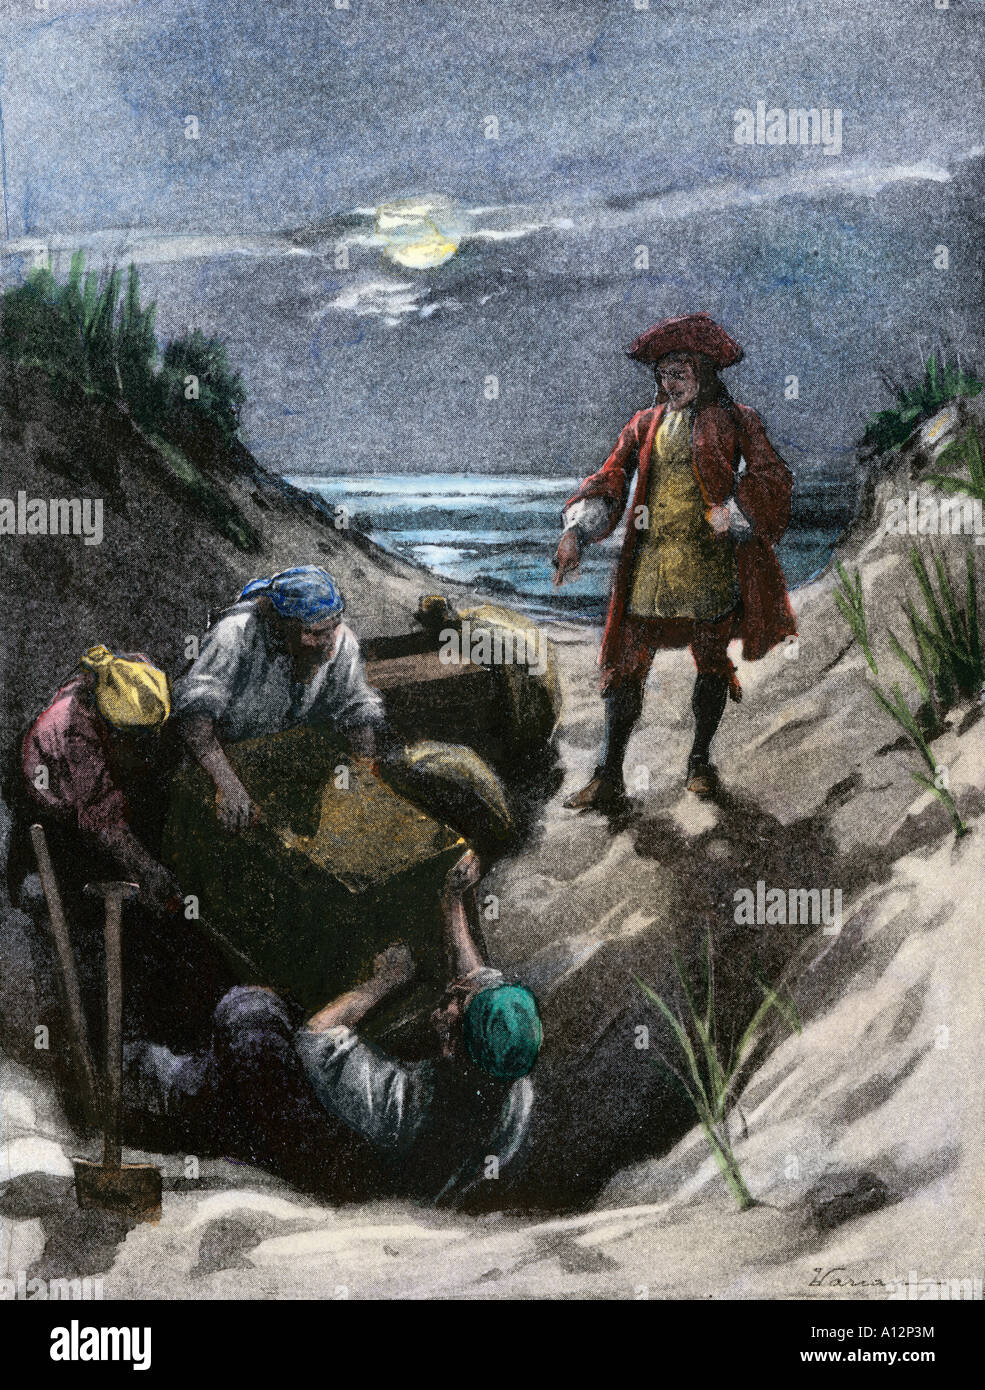 Pirate Captain Kidd möglicherweise seinen Schatz vergraben auf Gardiners Island im Hafen von New York. Handcolorierte halftone einer Abbildung Stockfoto